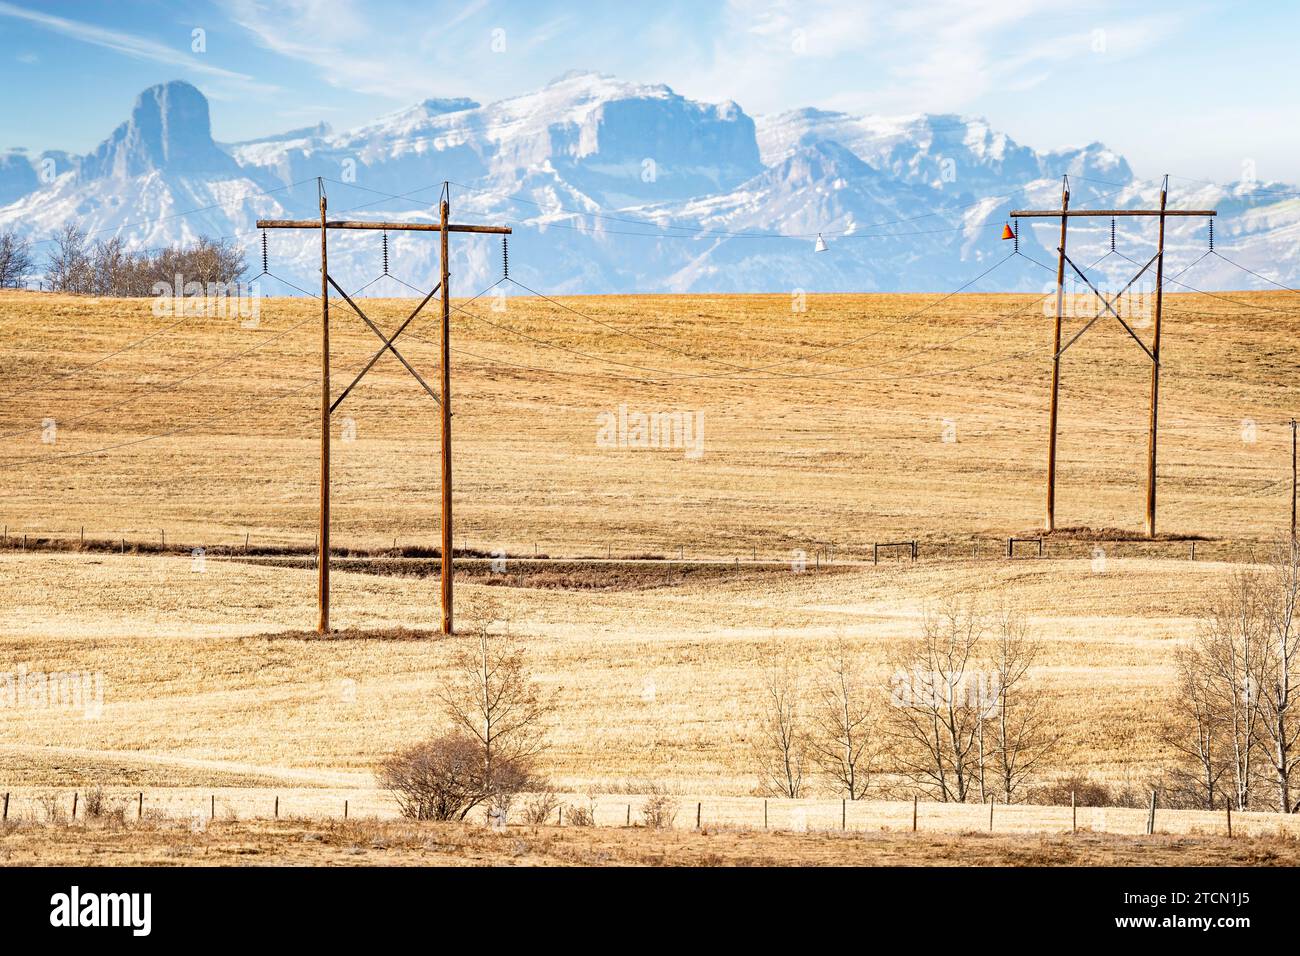 Paire de grands poteaux électriques en bois avec des fils électriques suspendus surplombant une colline et les montagnes Rocheuses canadiennes lointaines près de Cochrane Alberta ca Banque D'Images